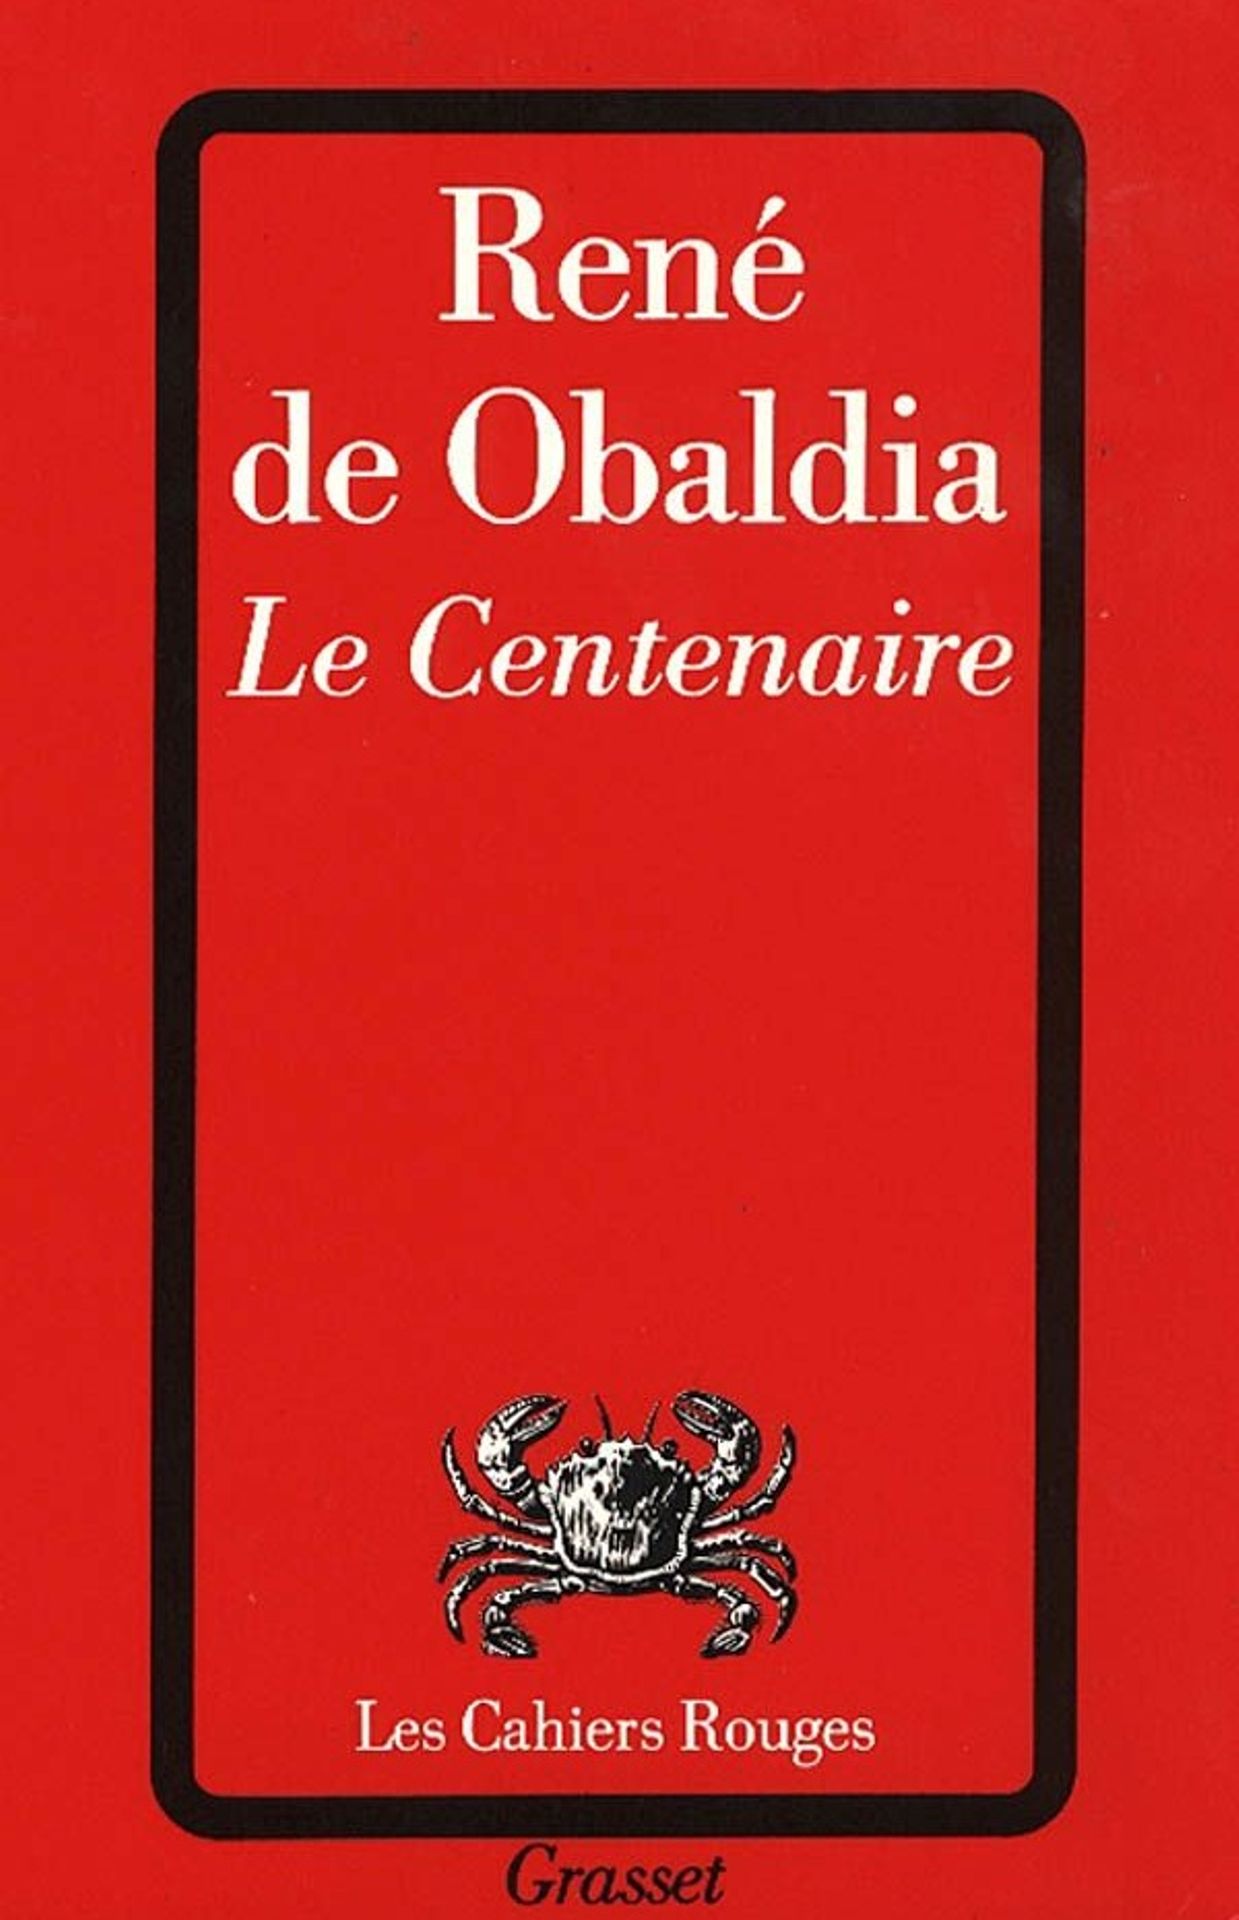 Première de couverture du roman "Le Centenaire" de René de Obaldia.